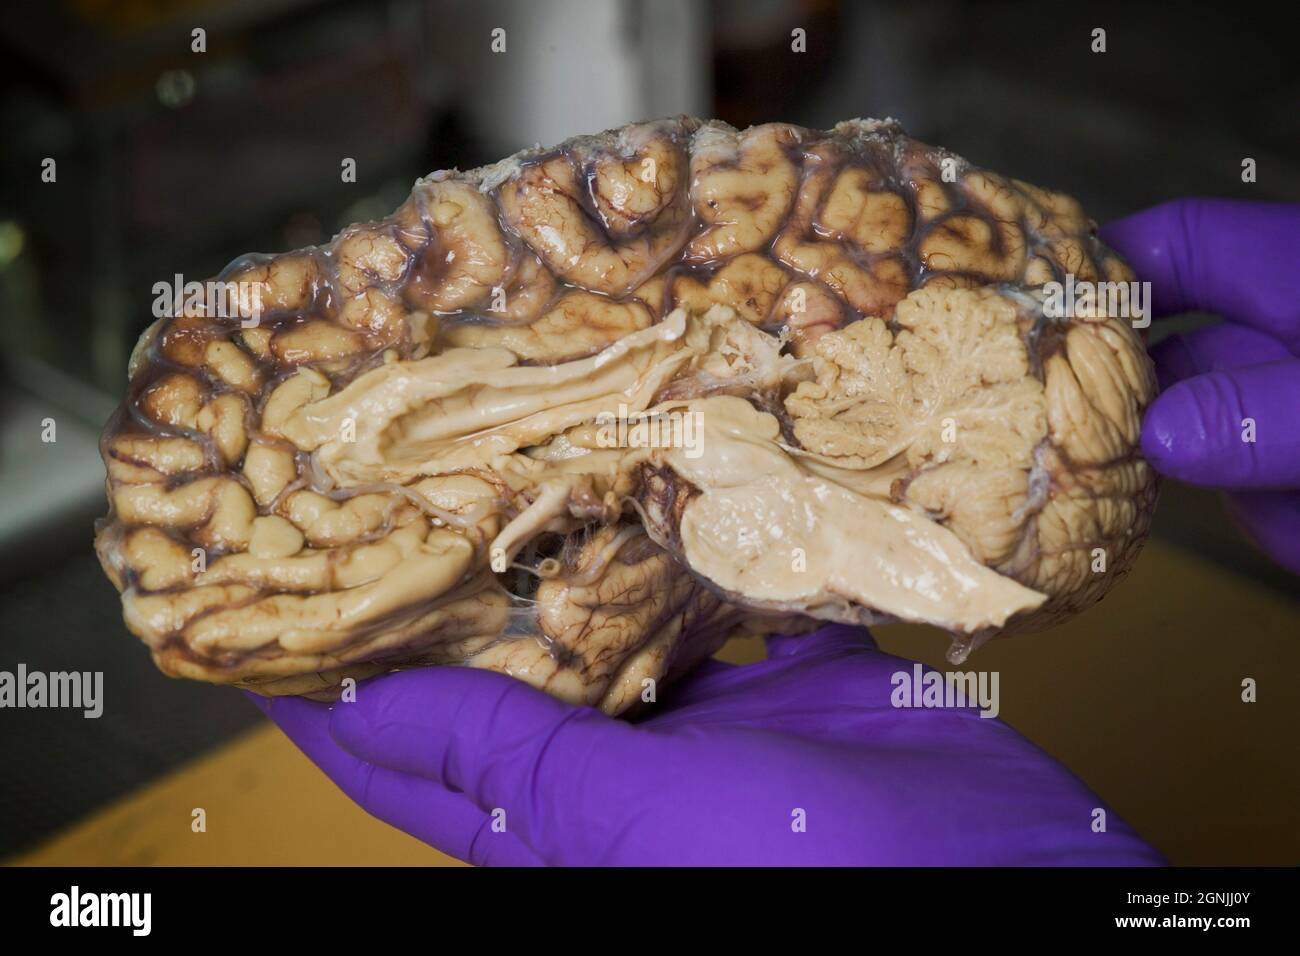 El técnico sostiene el hemisferio del cerebro humano, que ha sido tratado con formol para su conservación, antes de almacenarlo en banco de cerebro para investigación médica Foto de stock